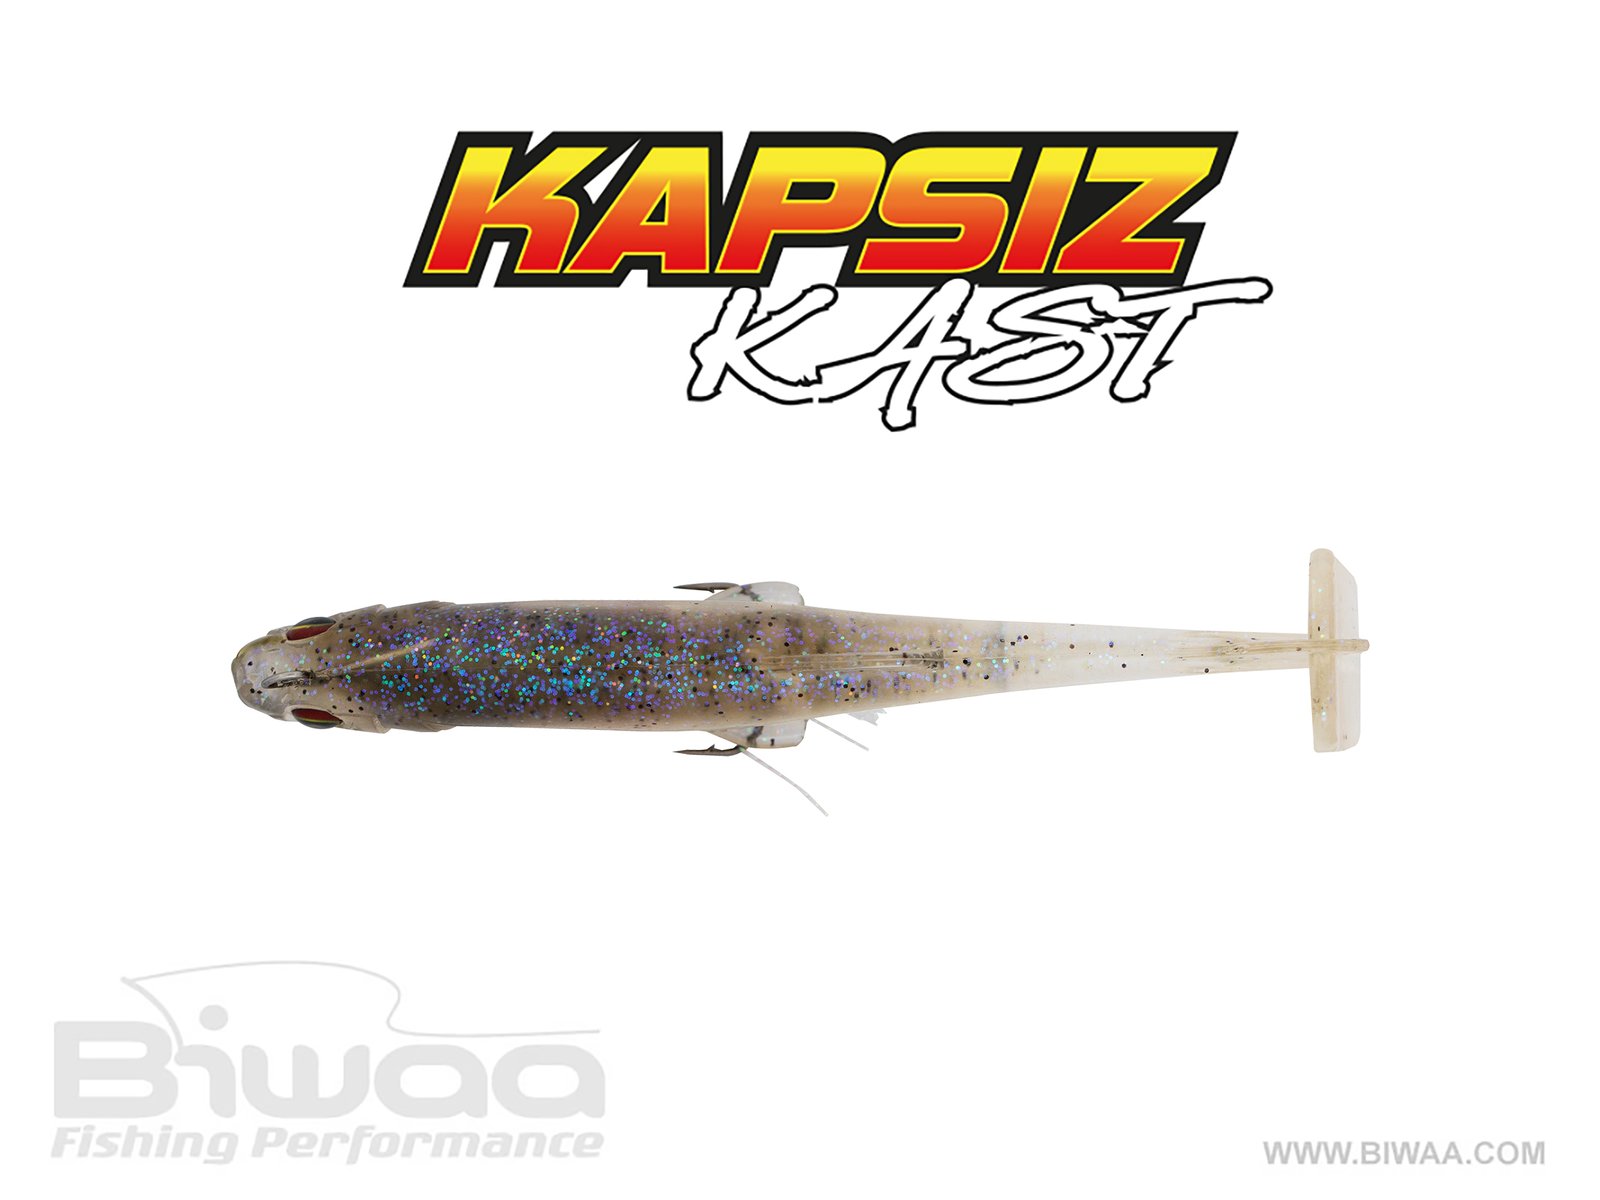 Kapsiz kast 6 - Biwaa Fishing Performance - pro fishing shop for